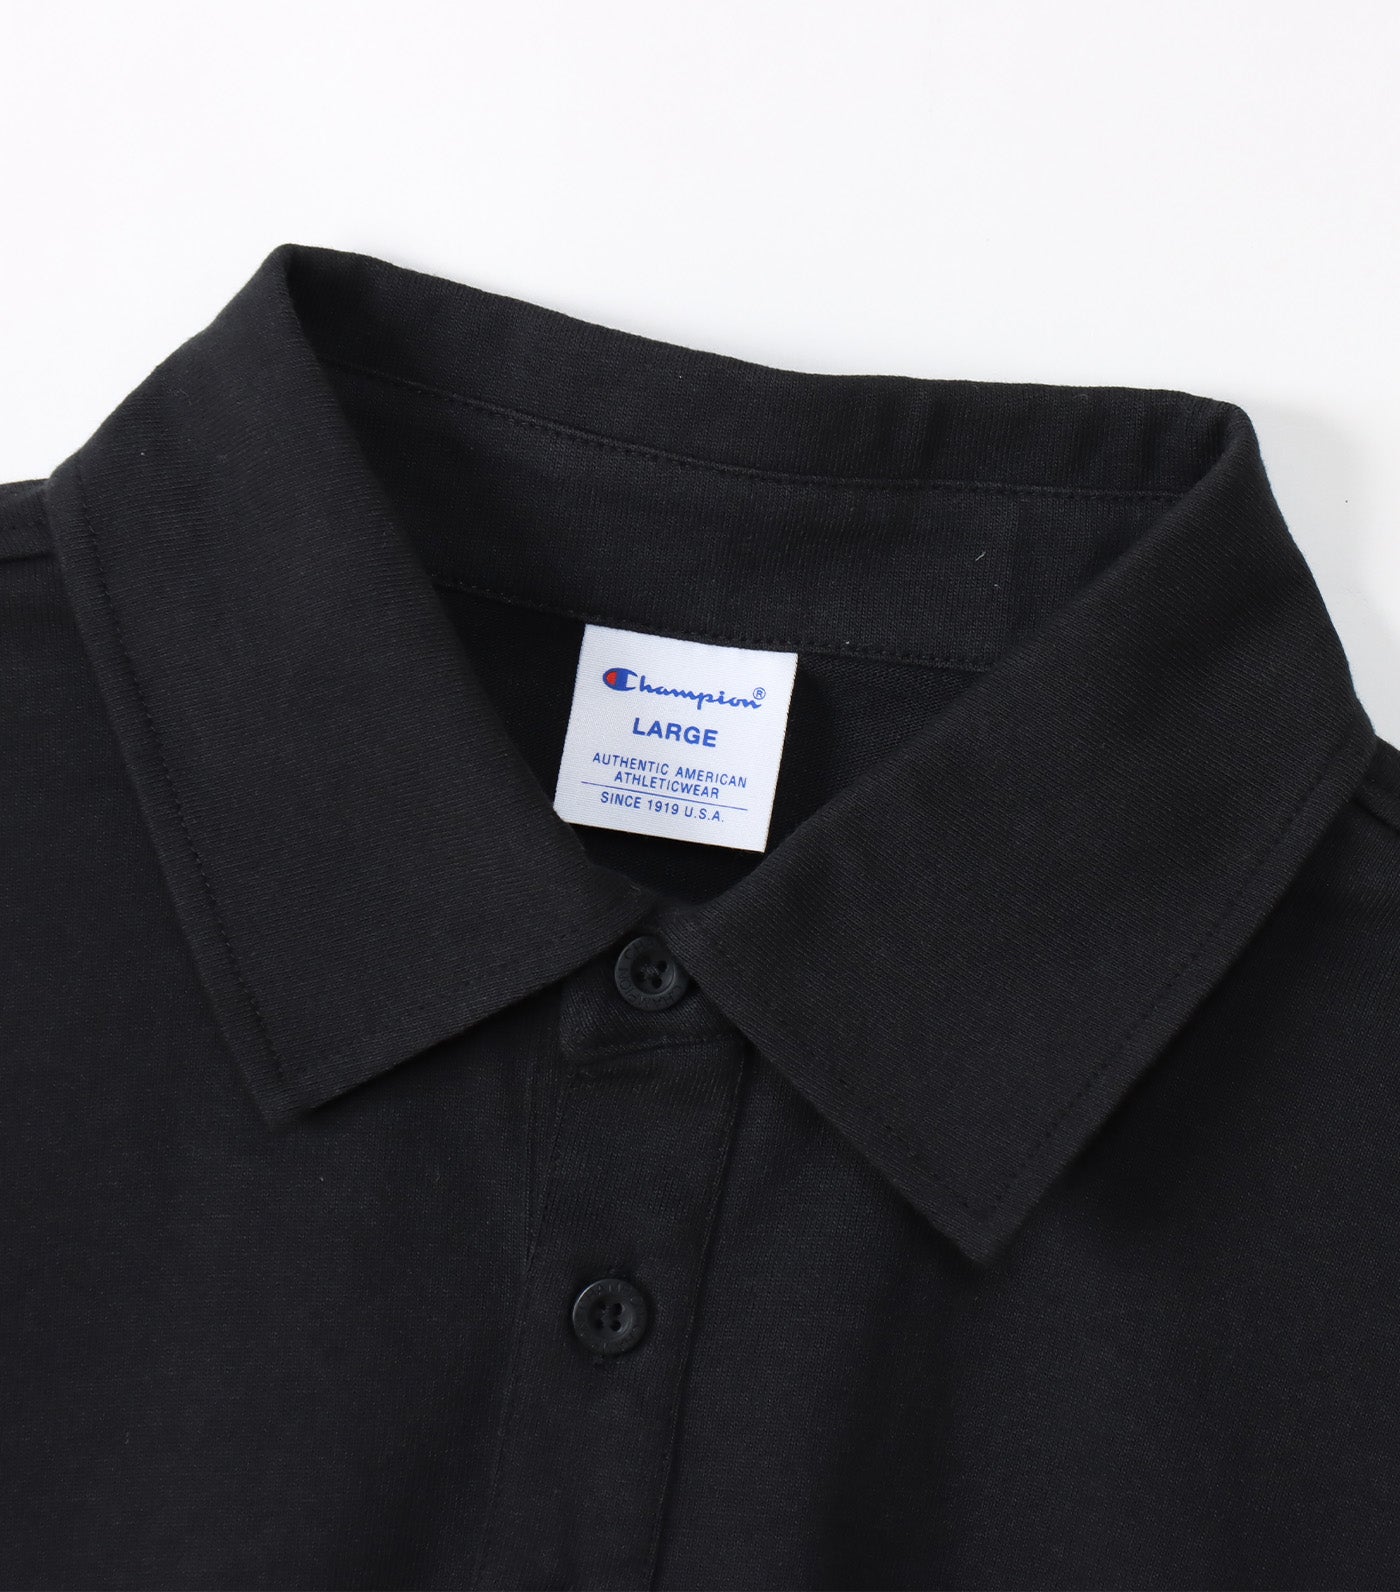 Japan Short Sleeve Polo Shirt Black